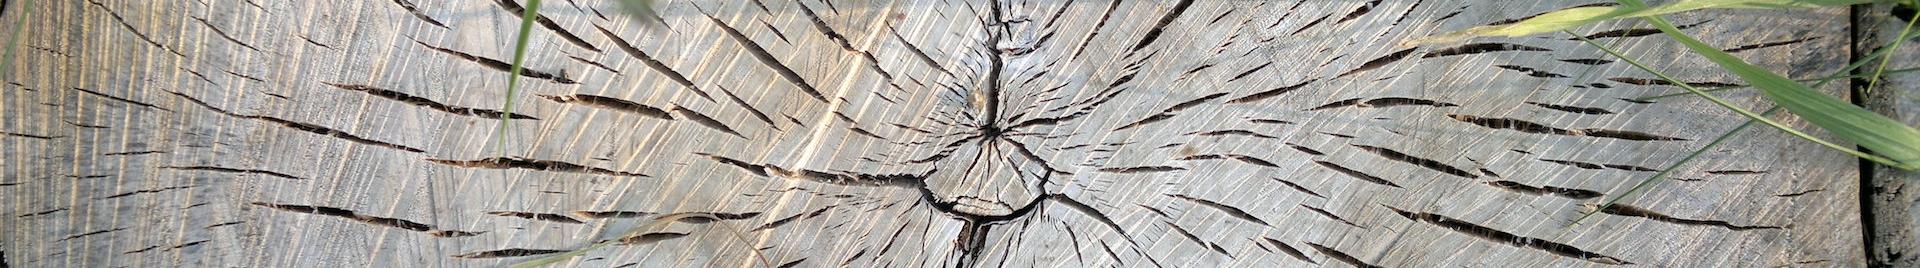 an image of a cut wooden log